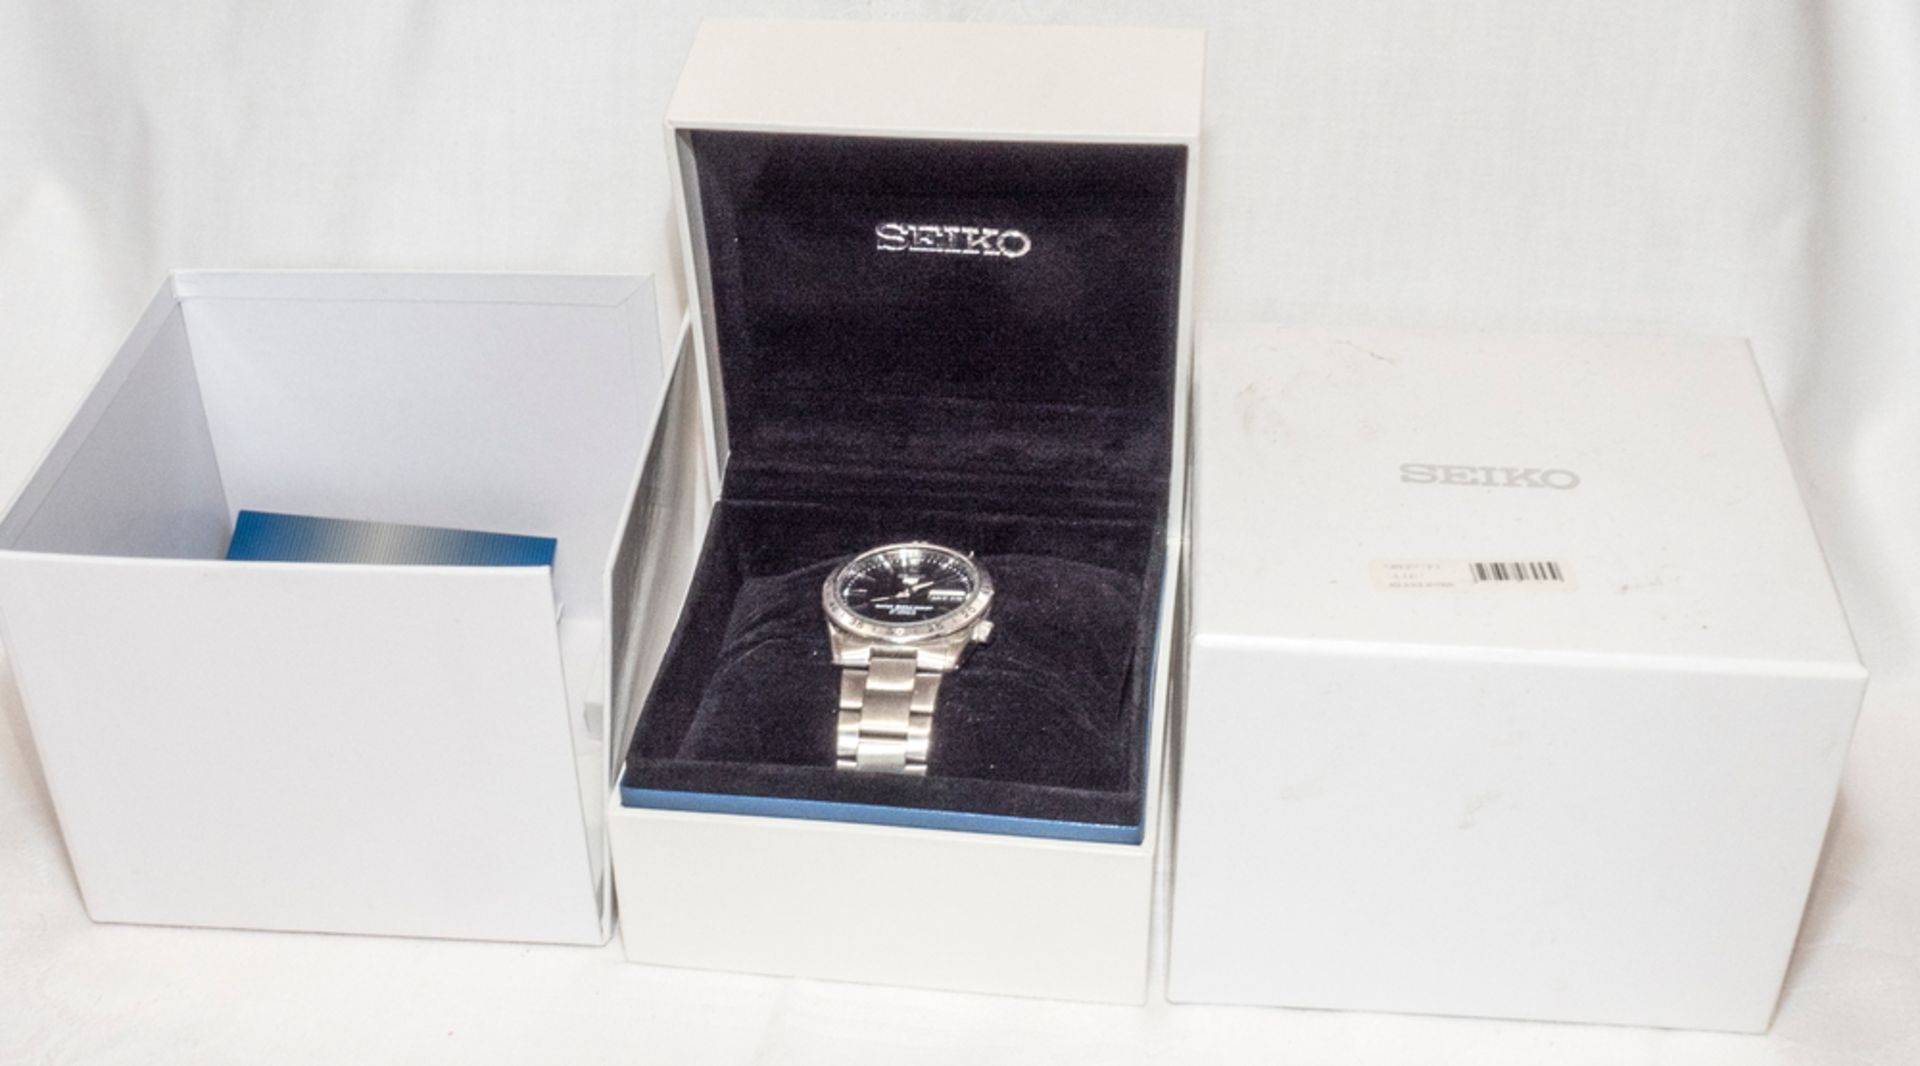 Seiko 5 Herrenarmband - Uhr, automatic, 21 Jewels, ungebraucht in original OVP. - Bild 2 aus 2